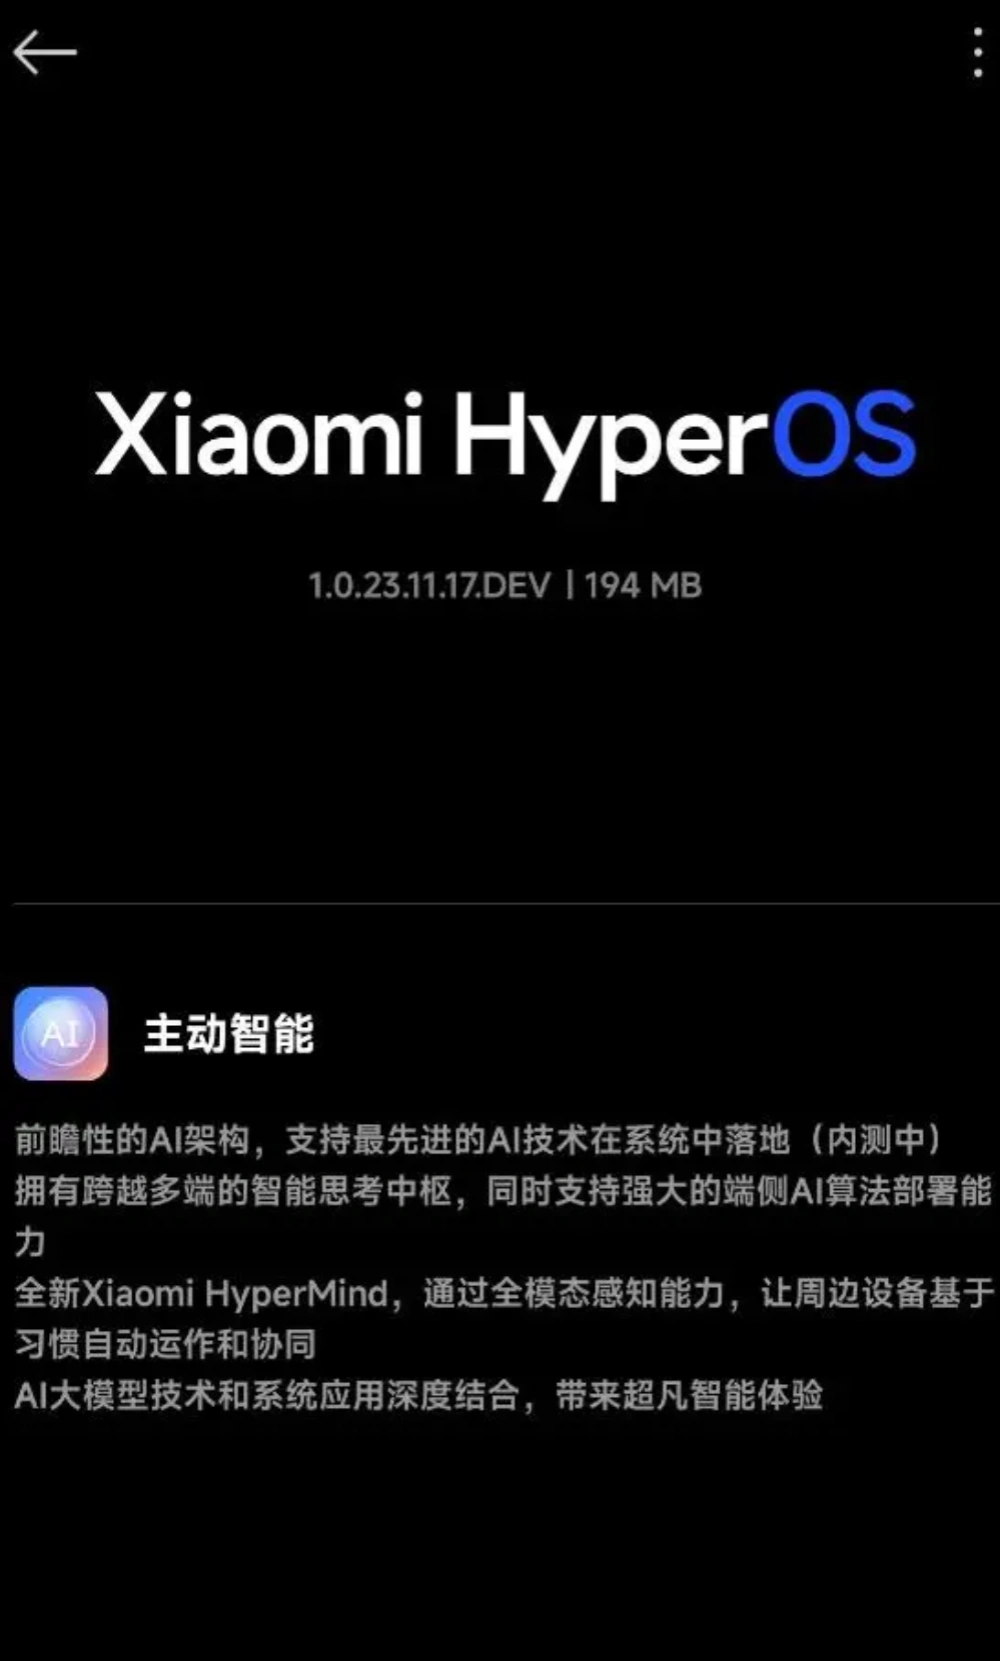 小米14手机推送Xiaomi HyperOS开发版更新,新增智能思考中枢HyperMind| 科技讯